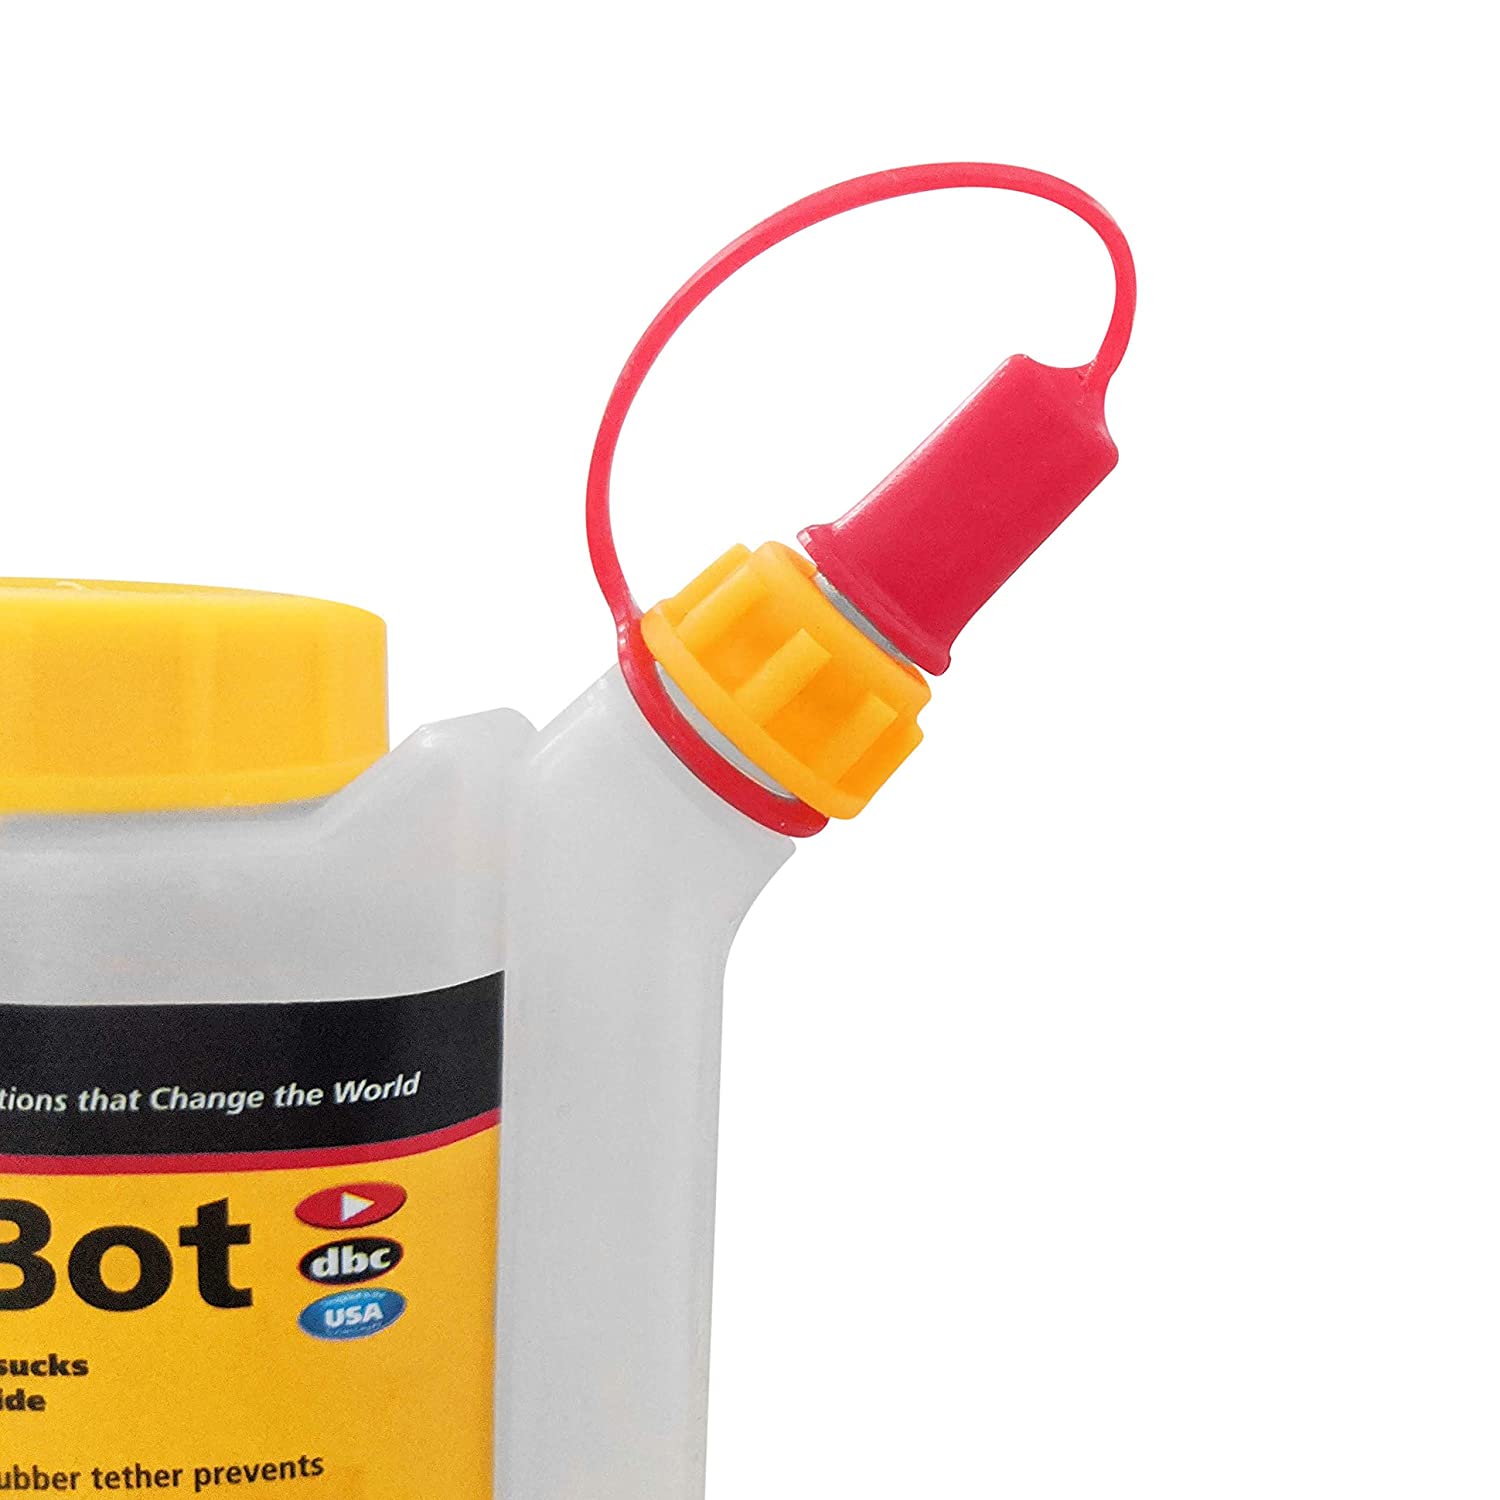 FastCap 4 oz BabeBot Glue Bottle